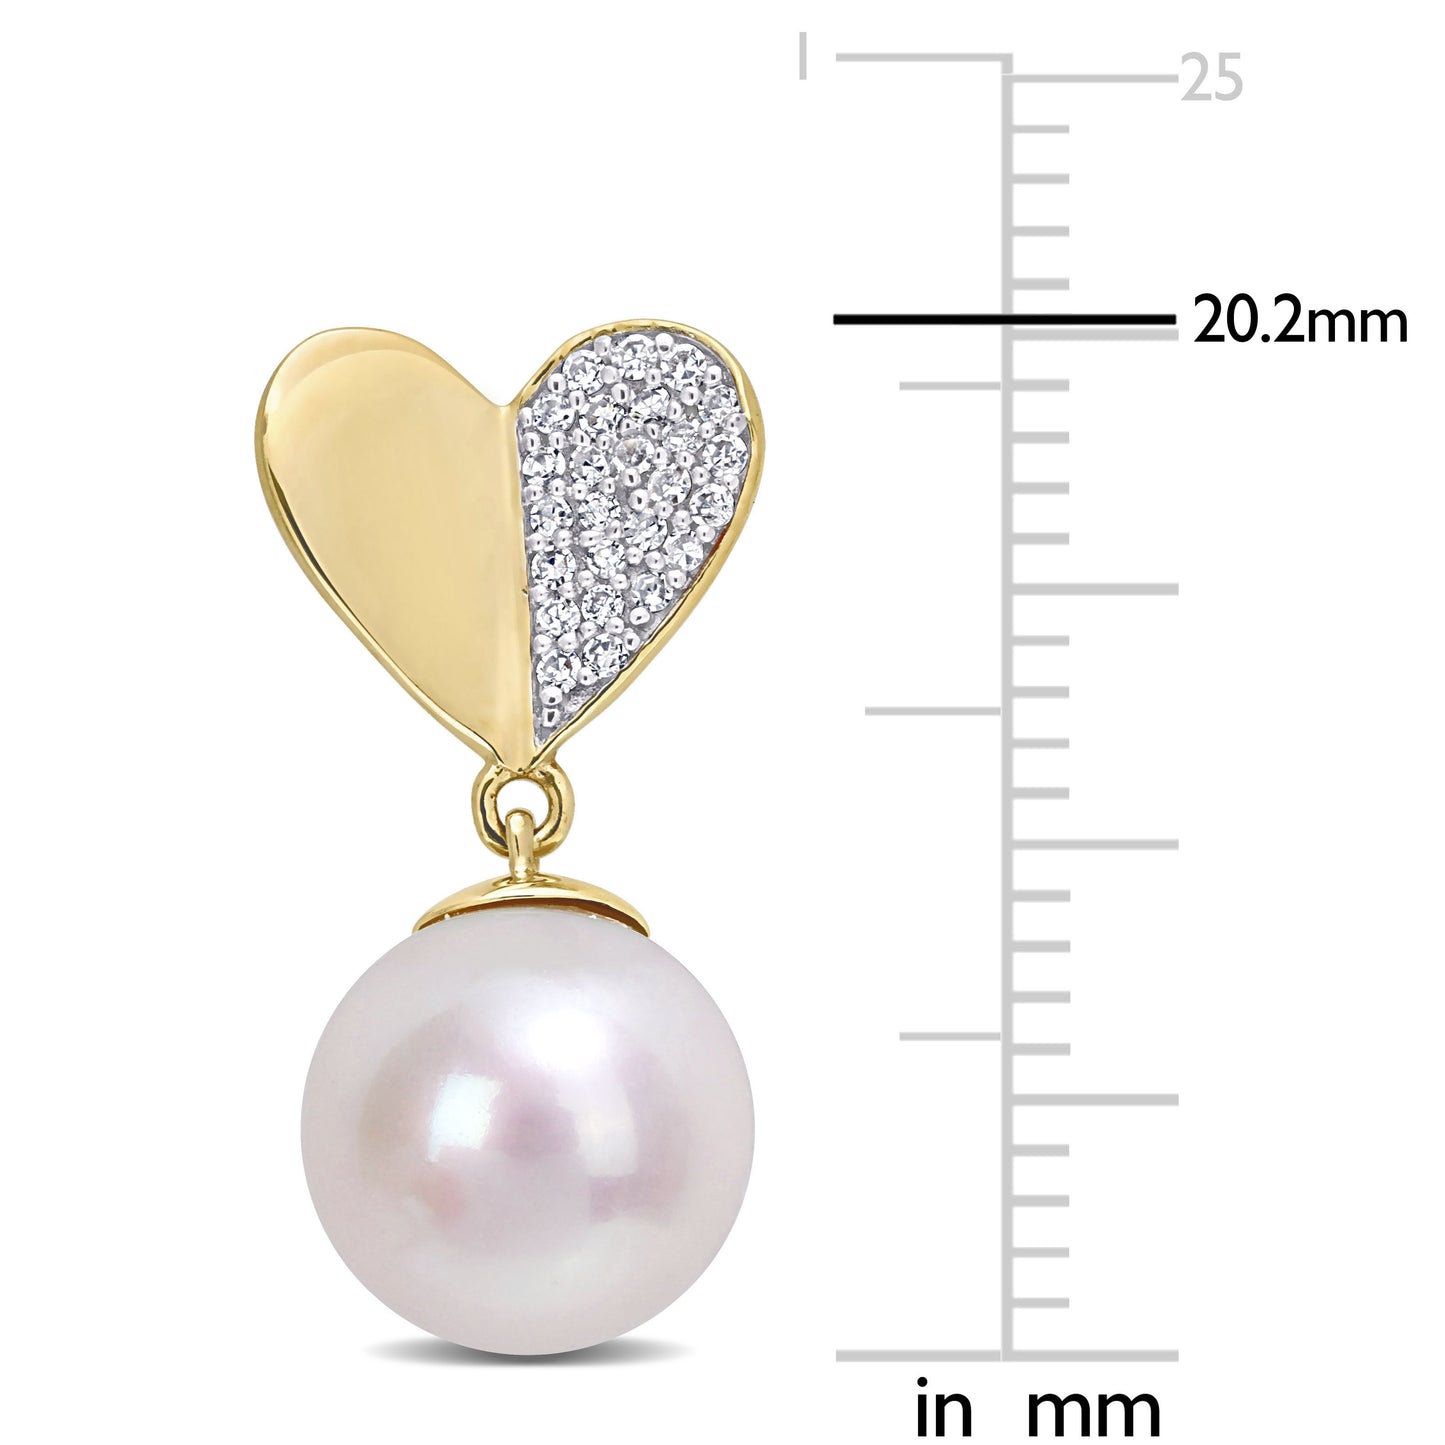 Pearl & Diamond Heart Drop Earrings in 14k Yellow Gold